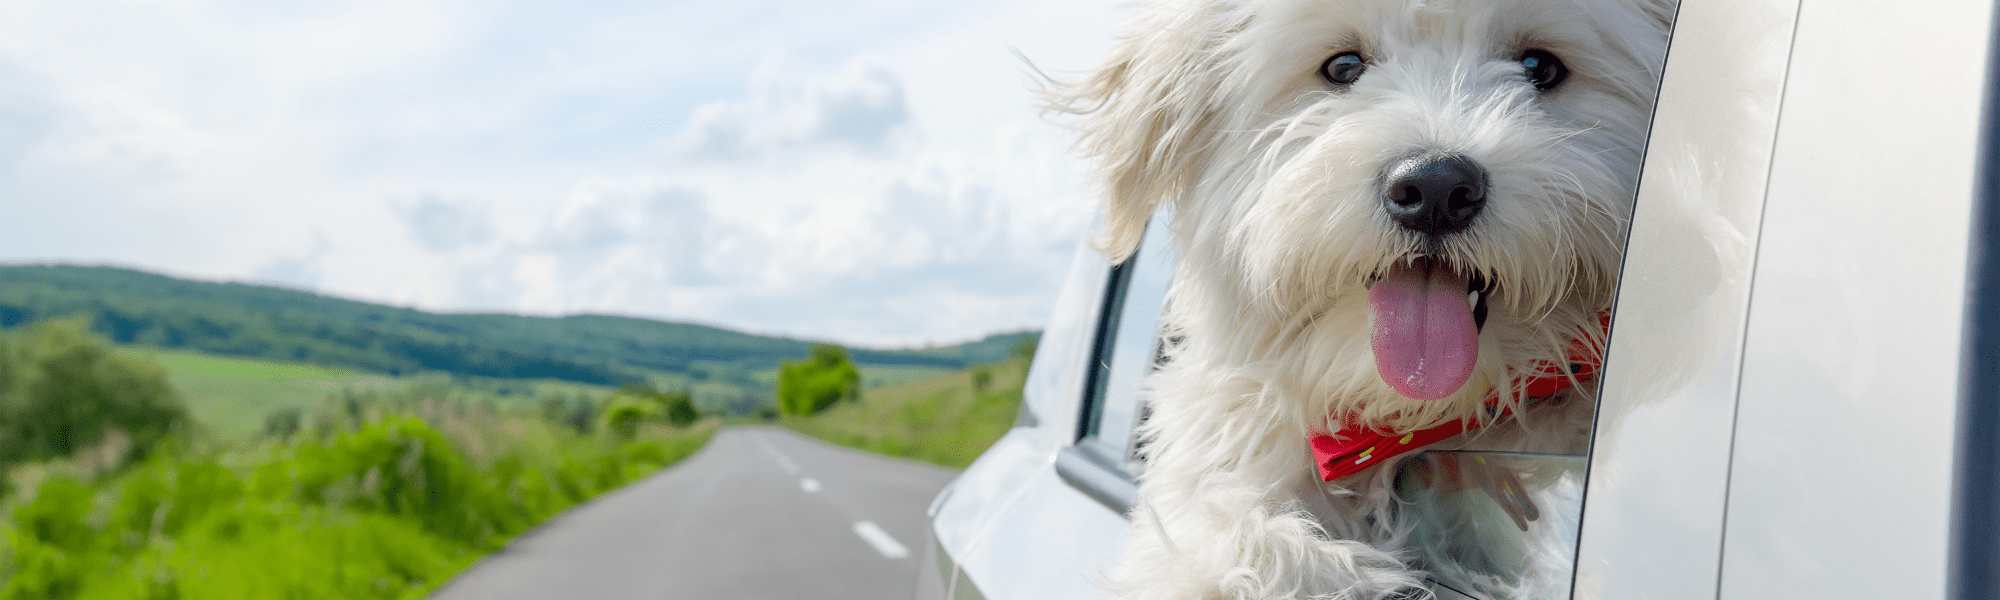 hund i bil hundes gear artikel